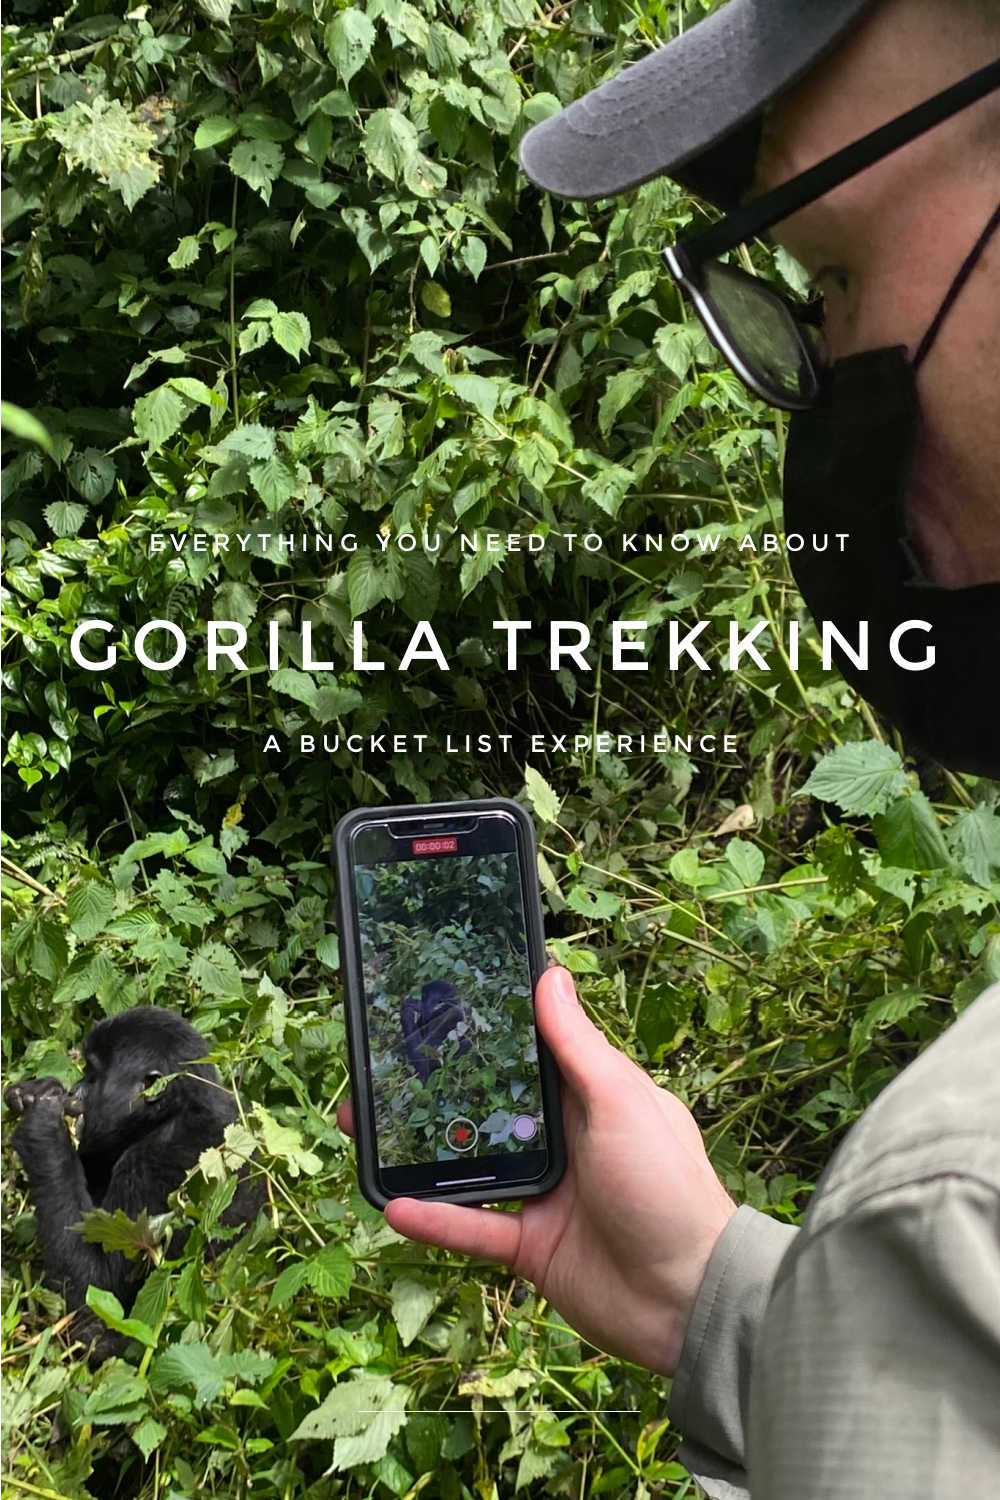 GORILLA TREKKING BUCKET LIST AFRICA TRIP